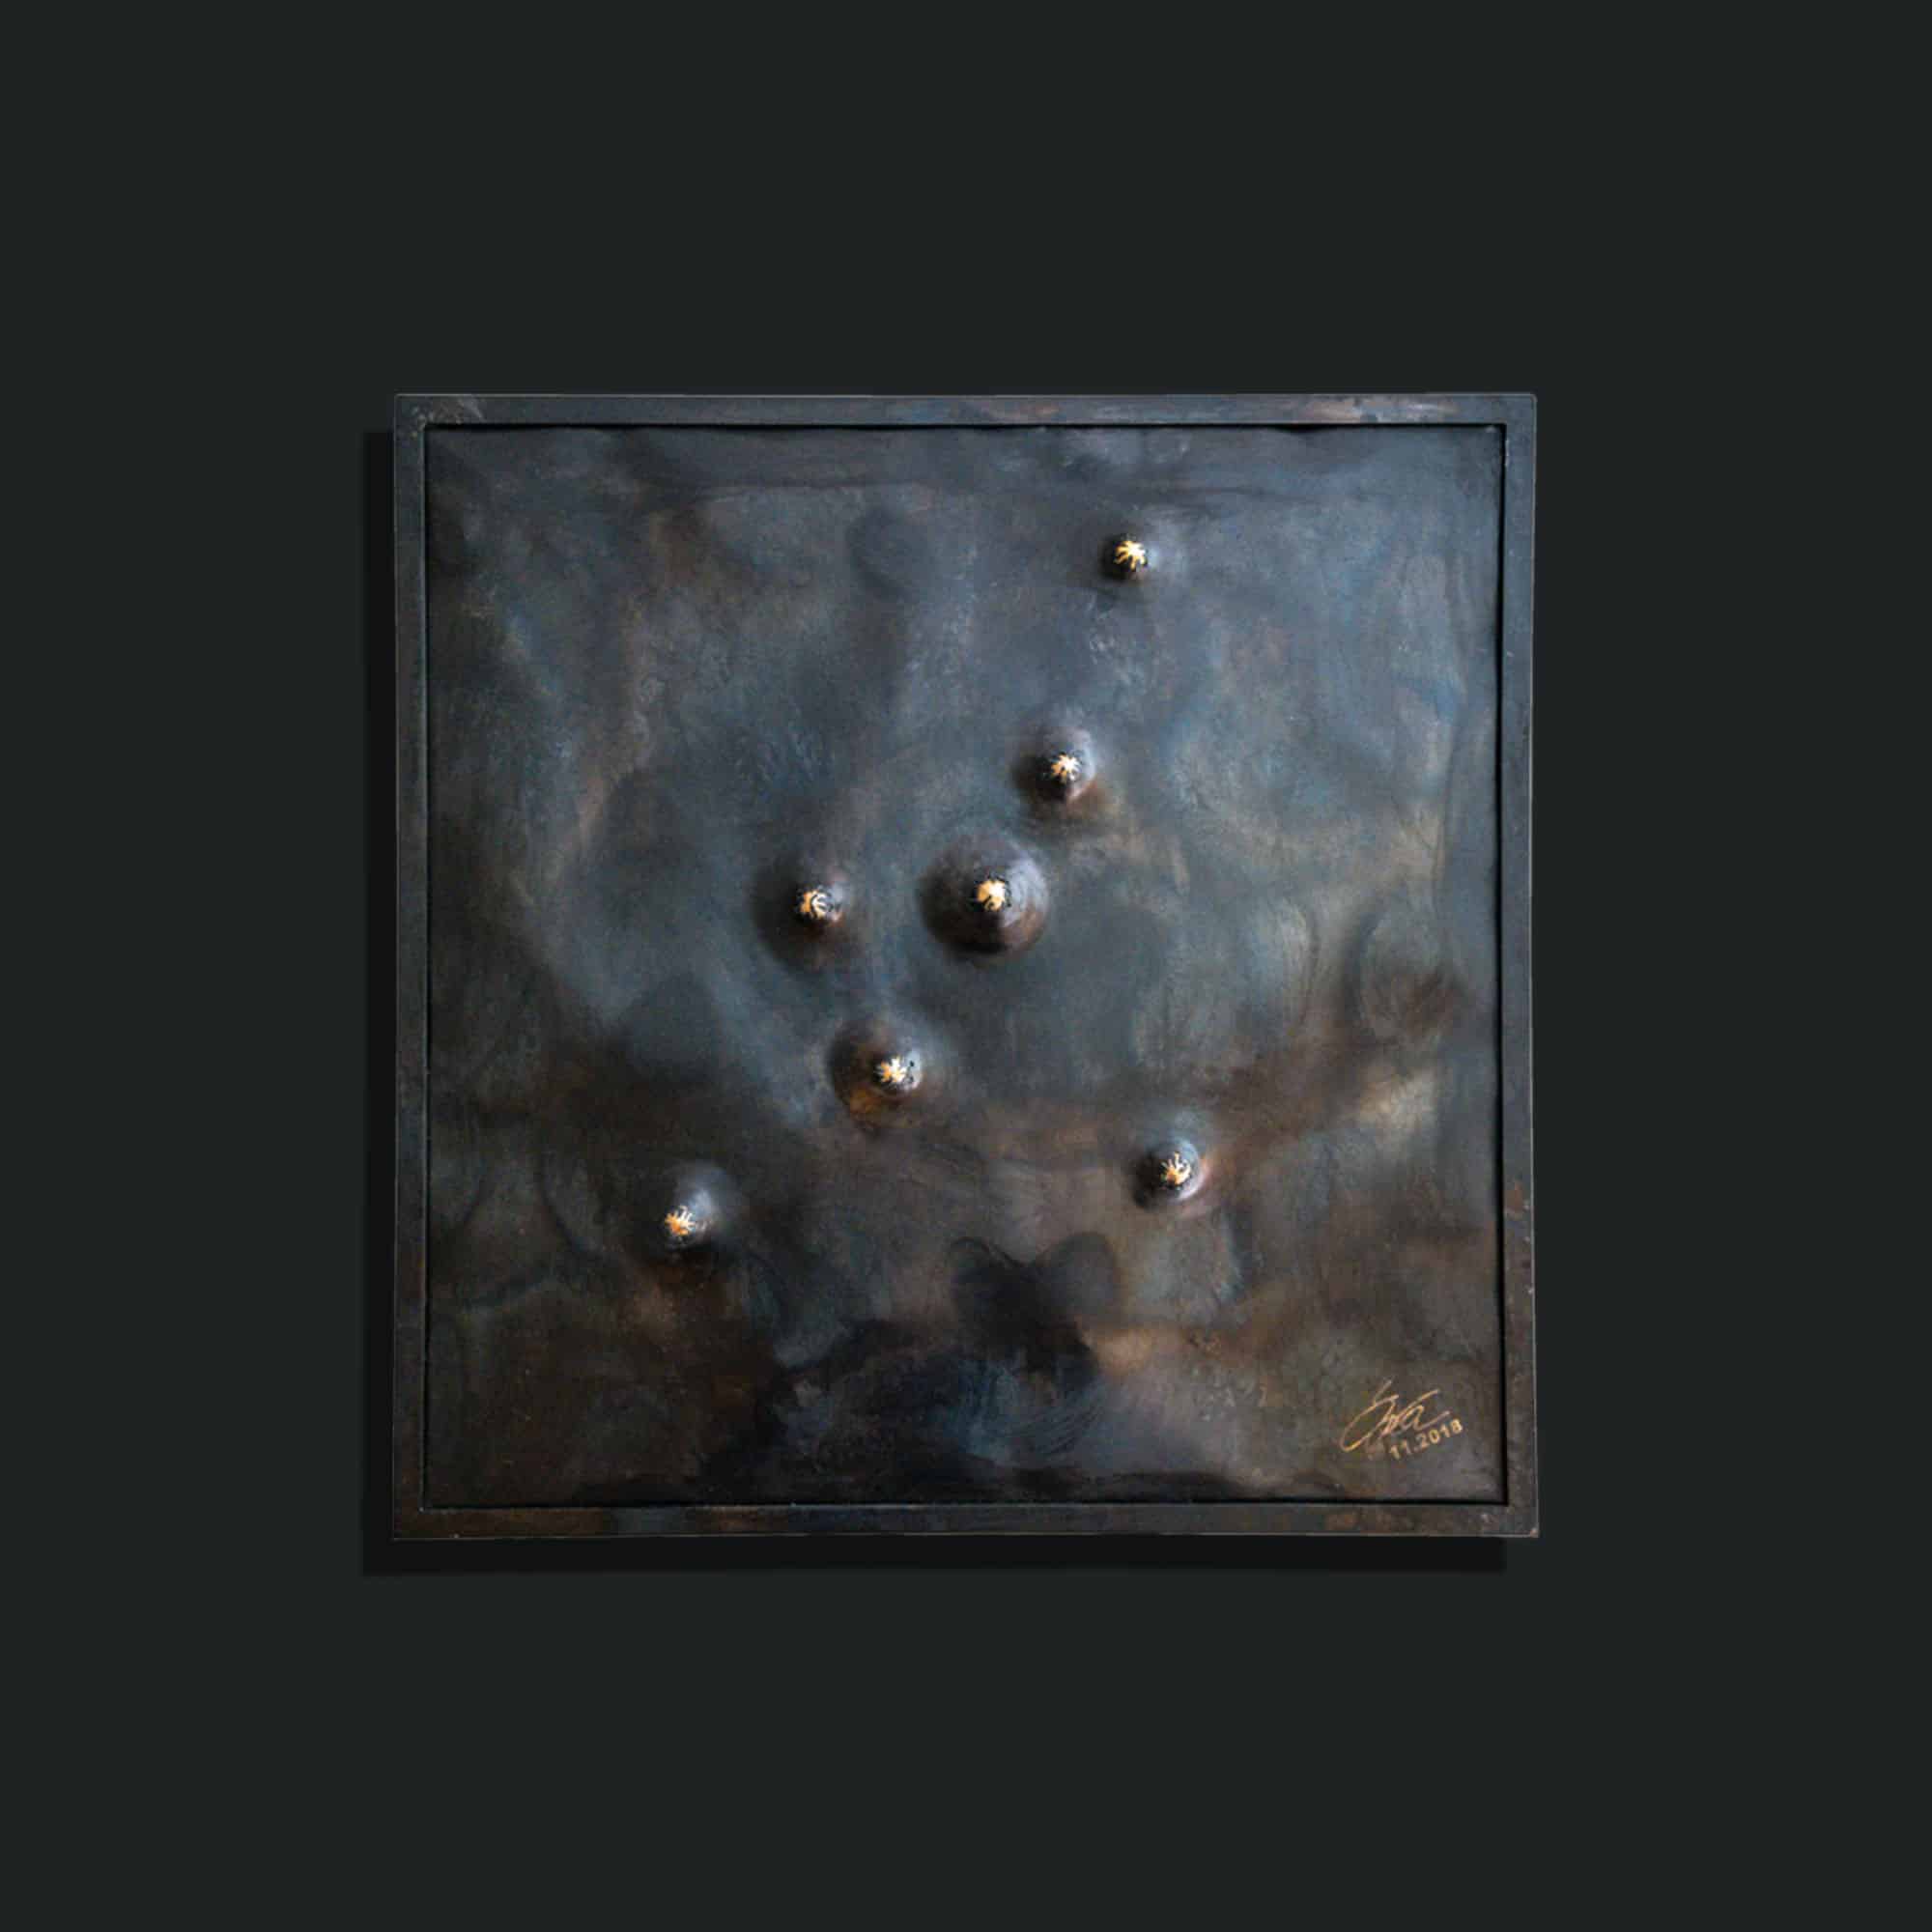 Kunstwerk mit dem Arbeitsnamen „Stahlbild #1“. Oberfläche brüniert, Kugeln vergoldet. Vom Stahlbildhauer Atelier Daniel Springer